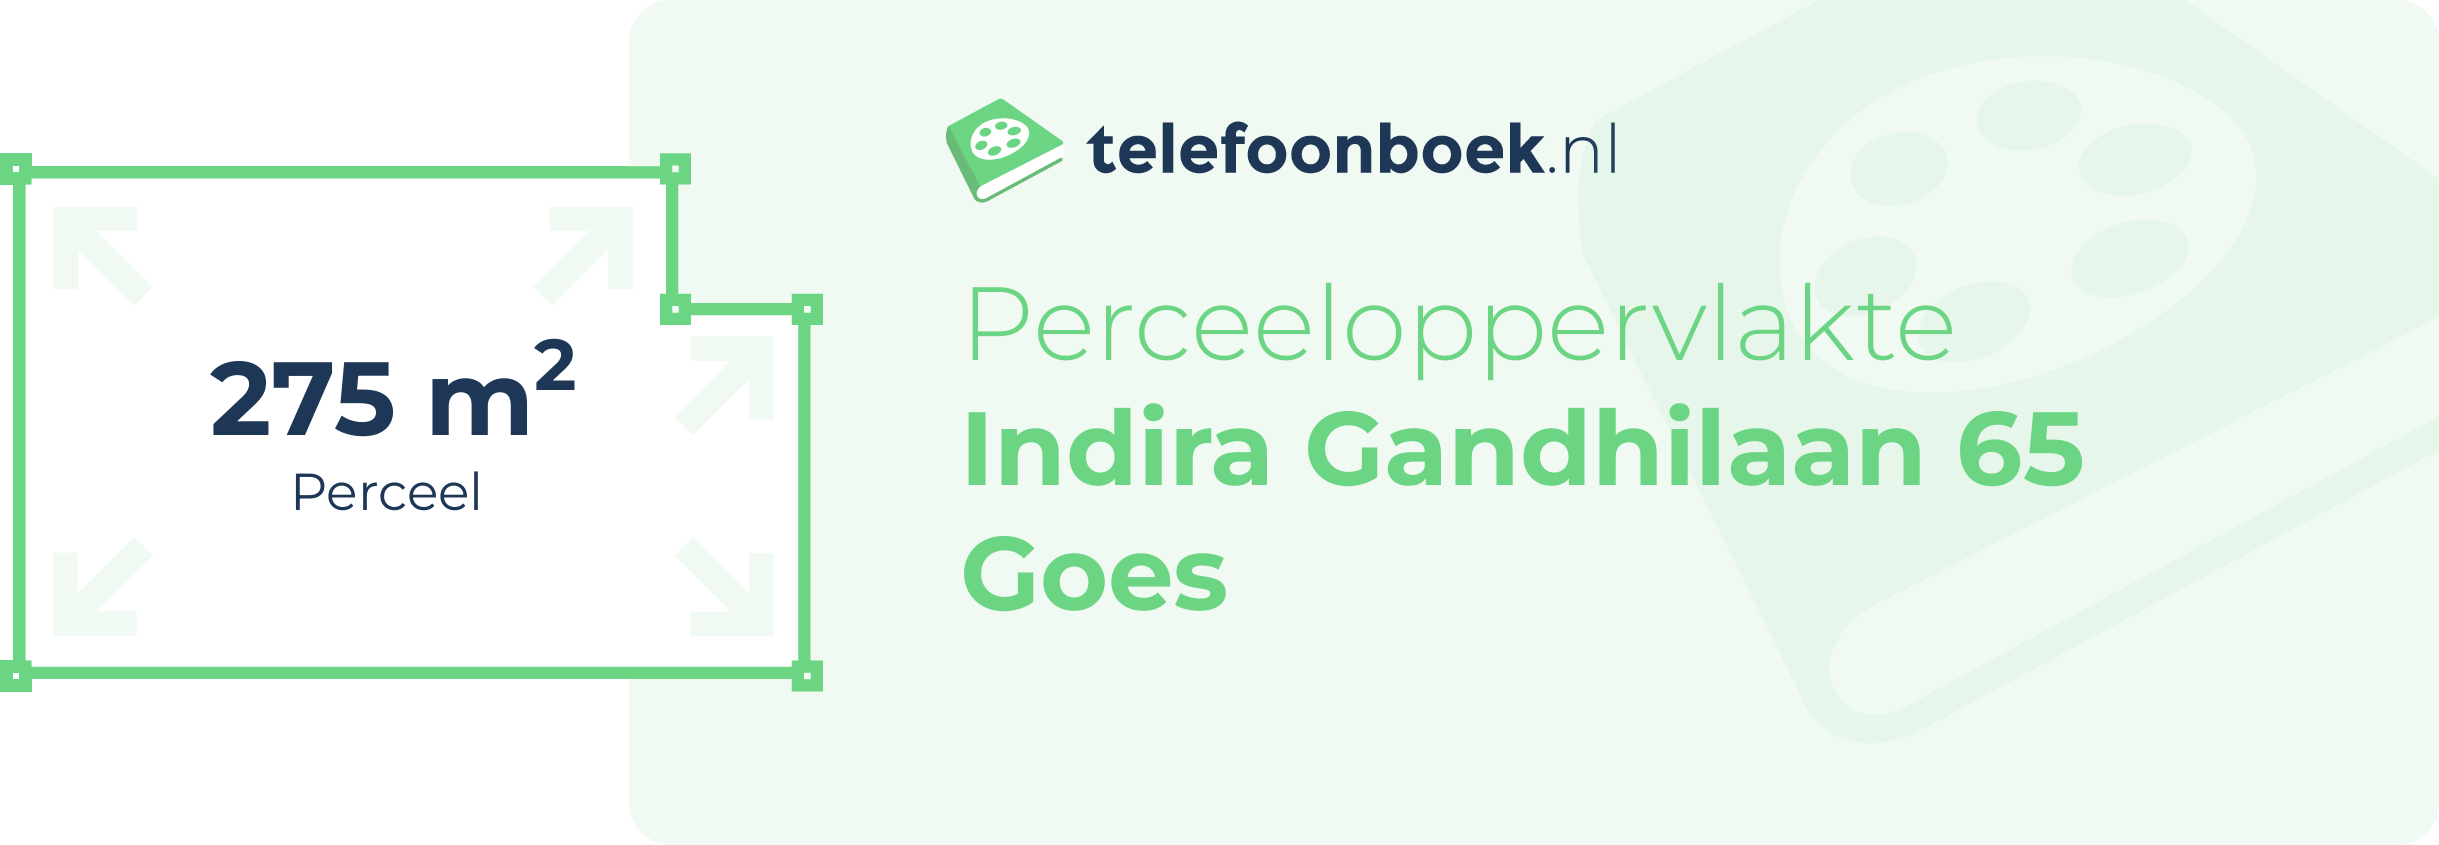 Perceeloppervlakte Indira Gandhilaan 65 Goes